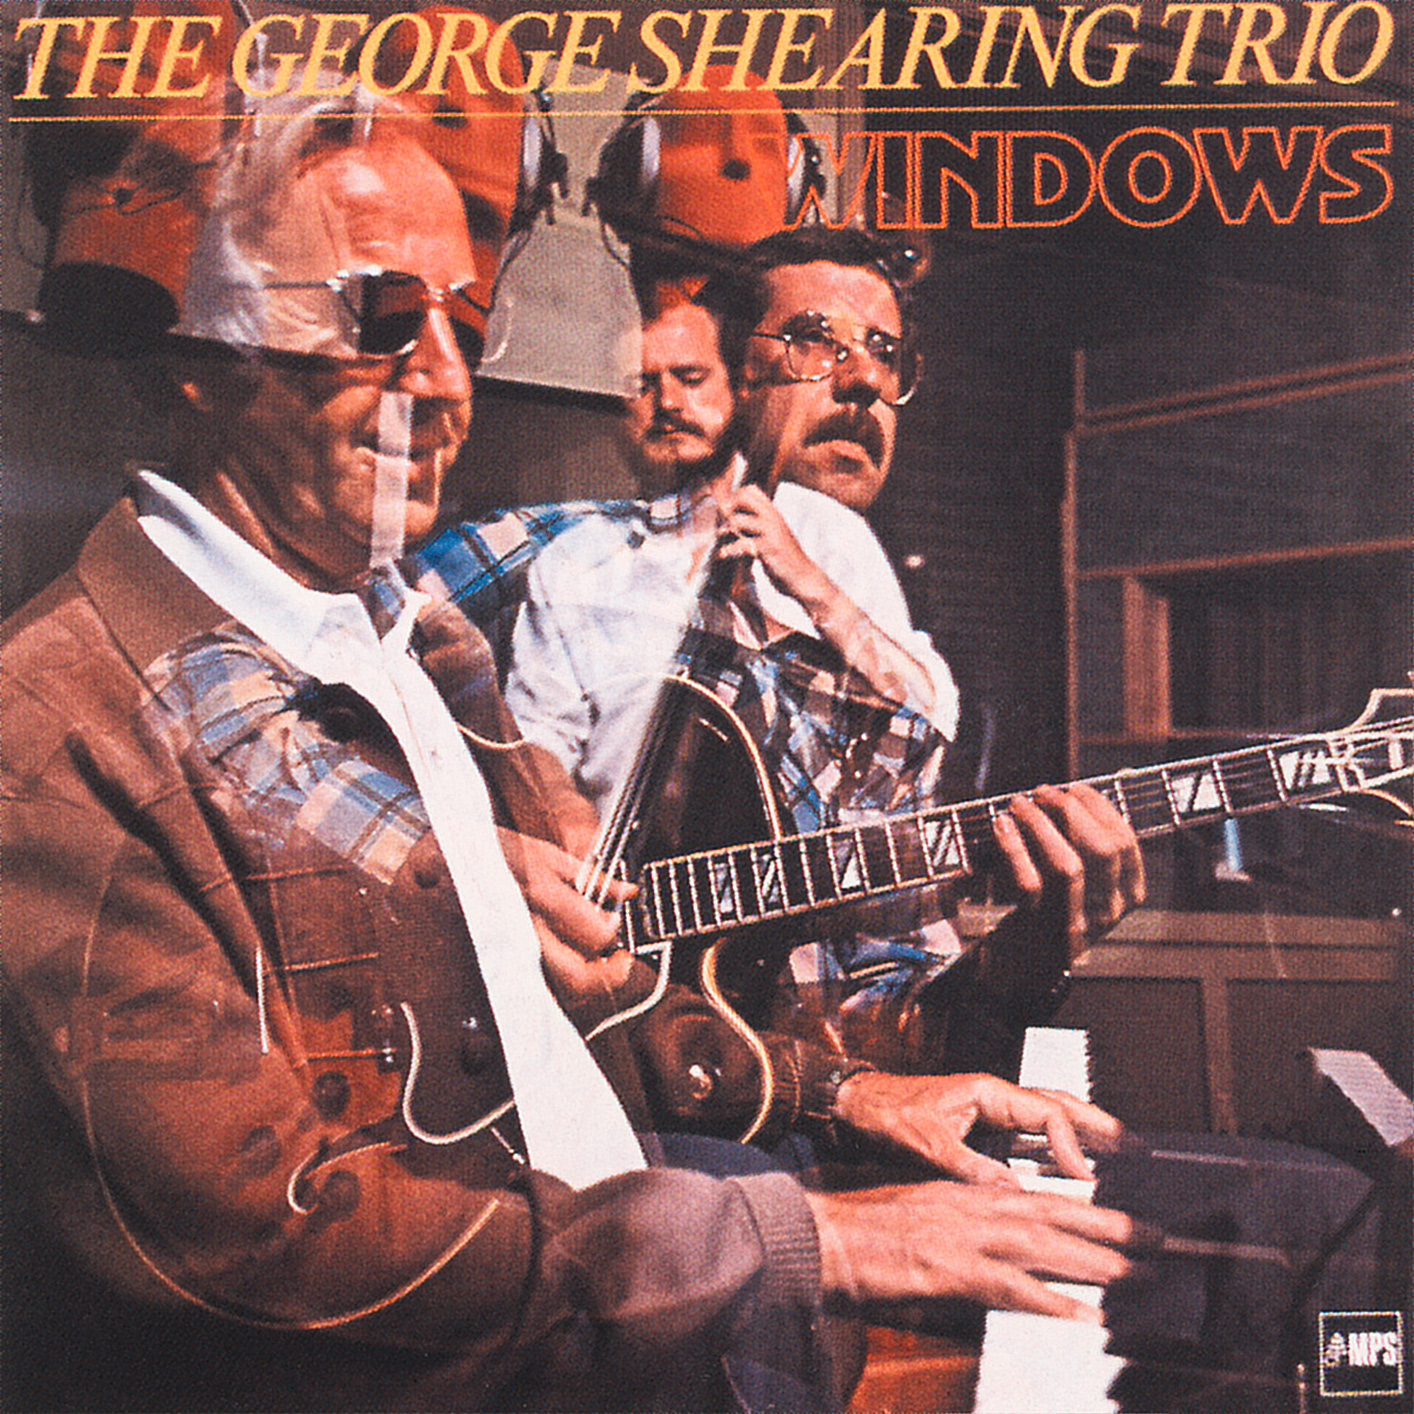 The George Shearing Trio - Windows (1978/2014) [HighResAudio FLAC 24bit/88,2kHz]